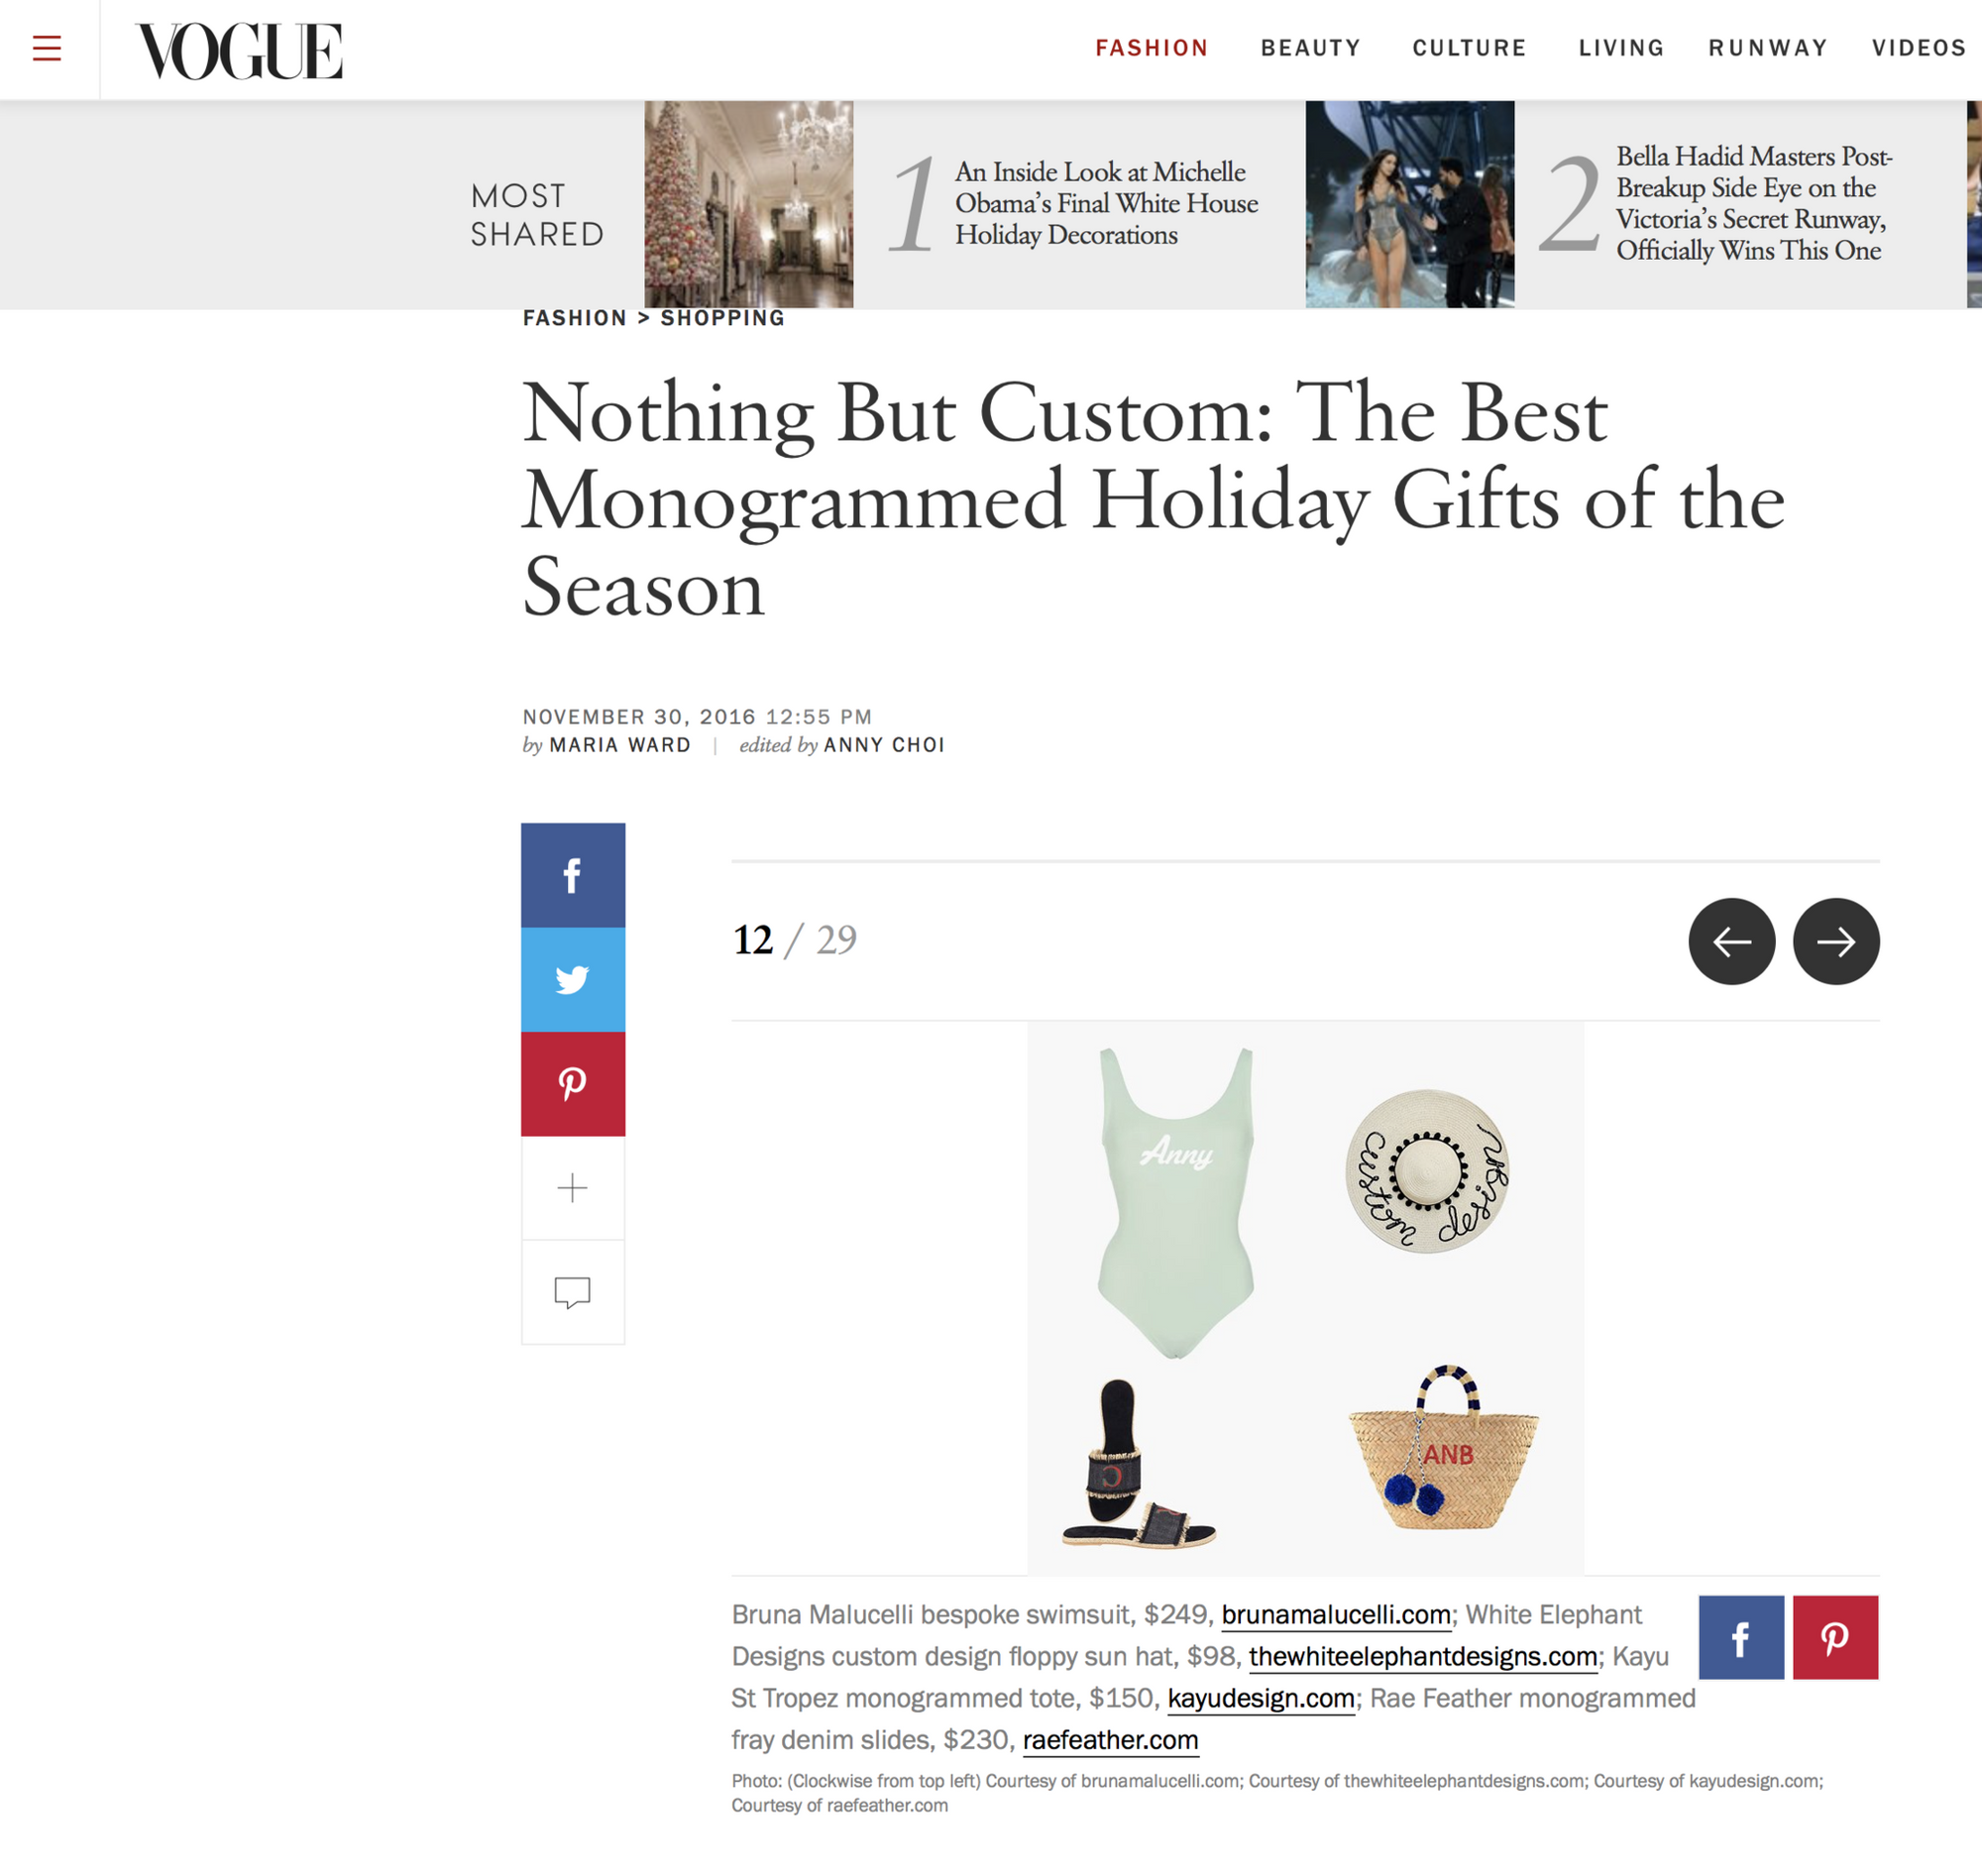 Vogue.com, Nov 2016